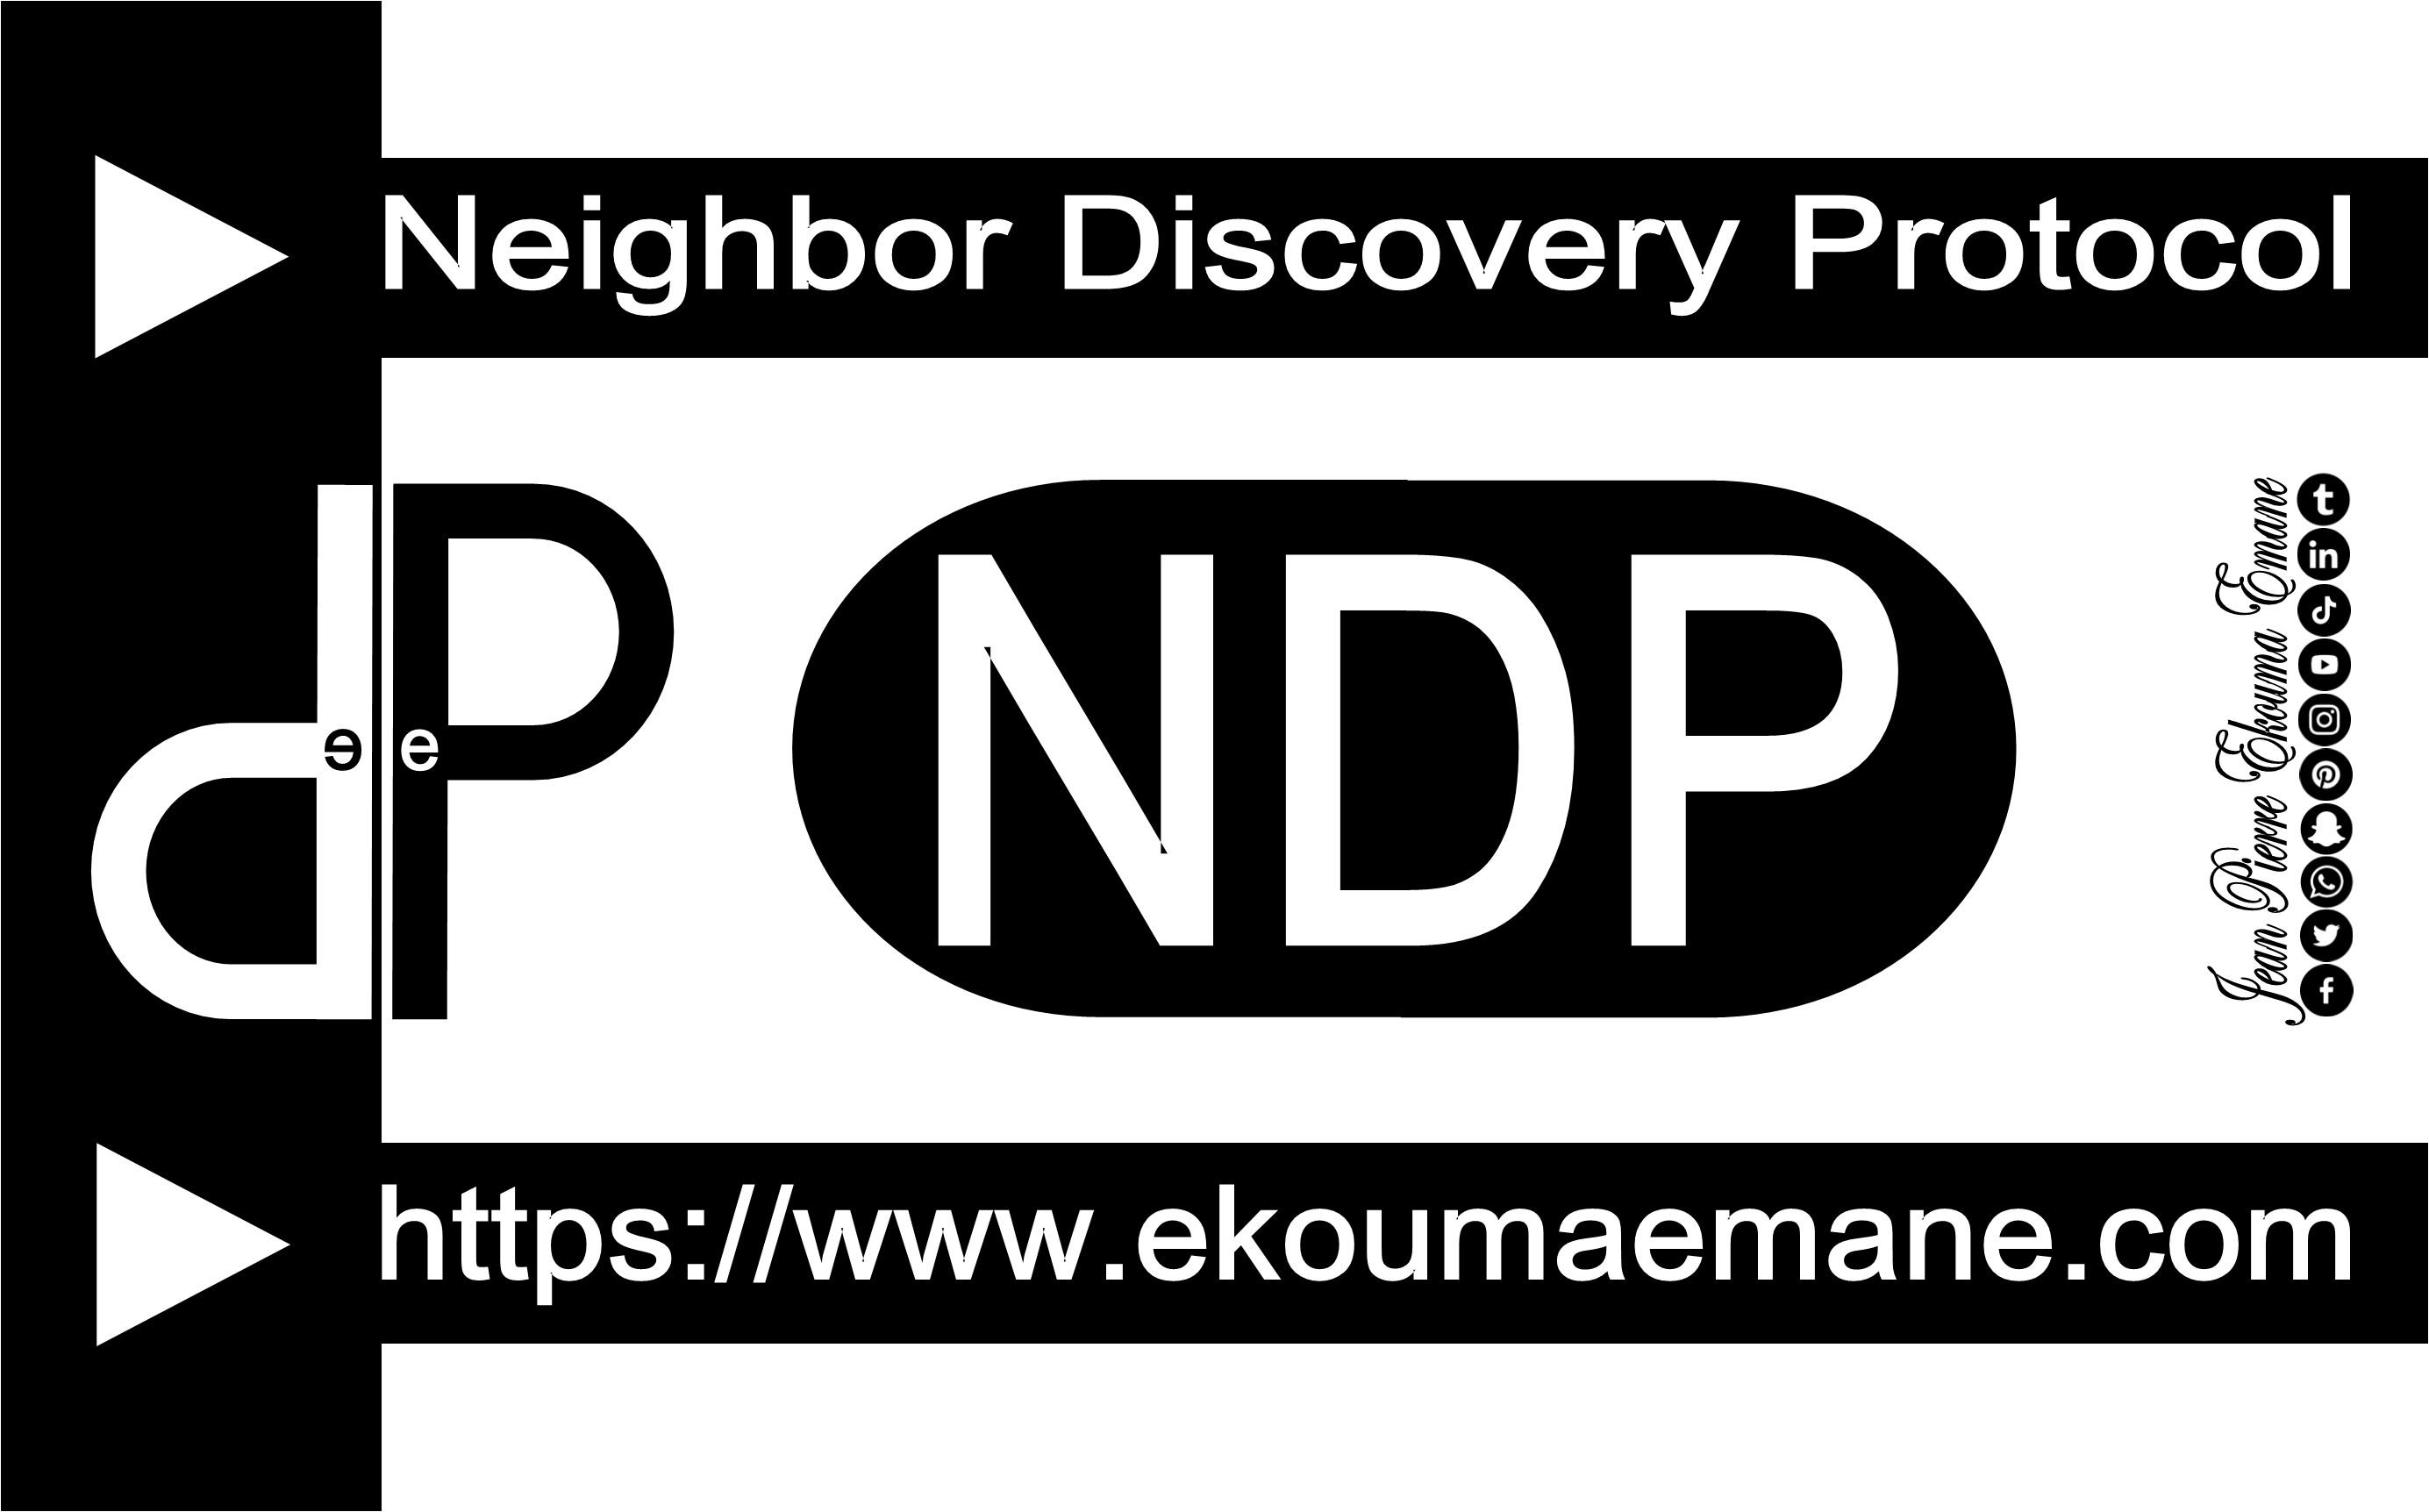 Neighbor Discovery Protocol (NDP) | Découverte d'hôtes voisins